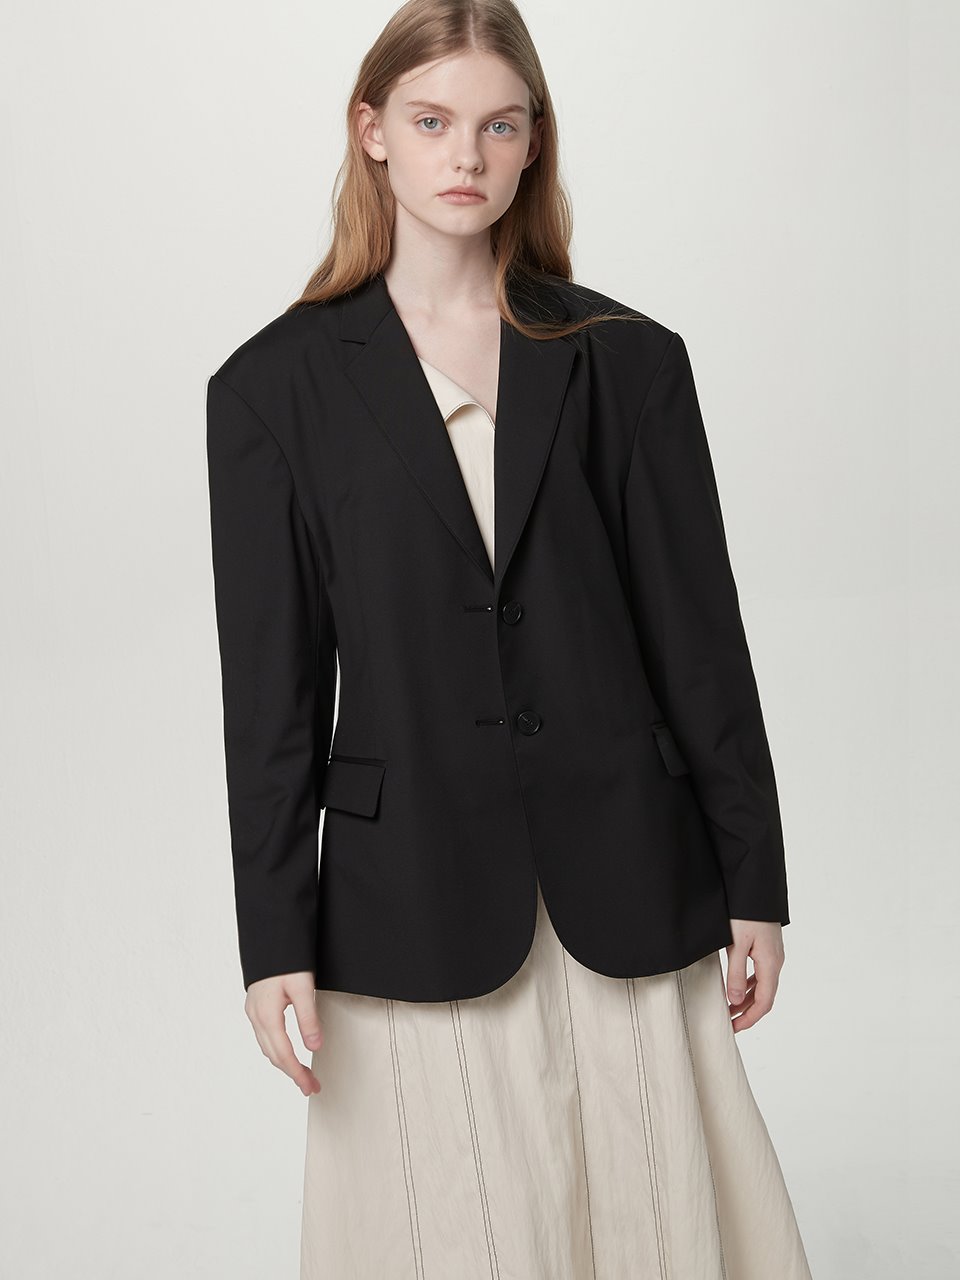 [REFURB SALE] Single suit jacket - Black